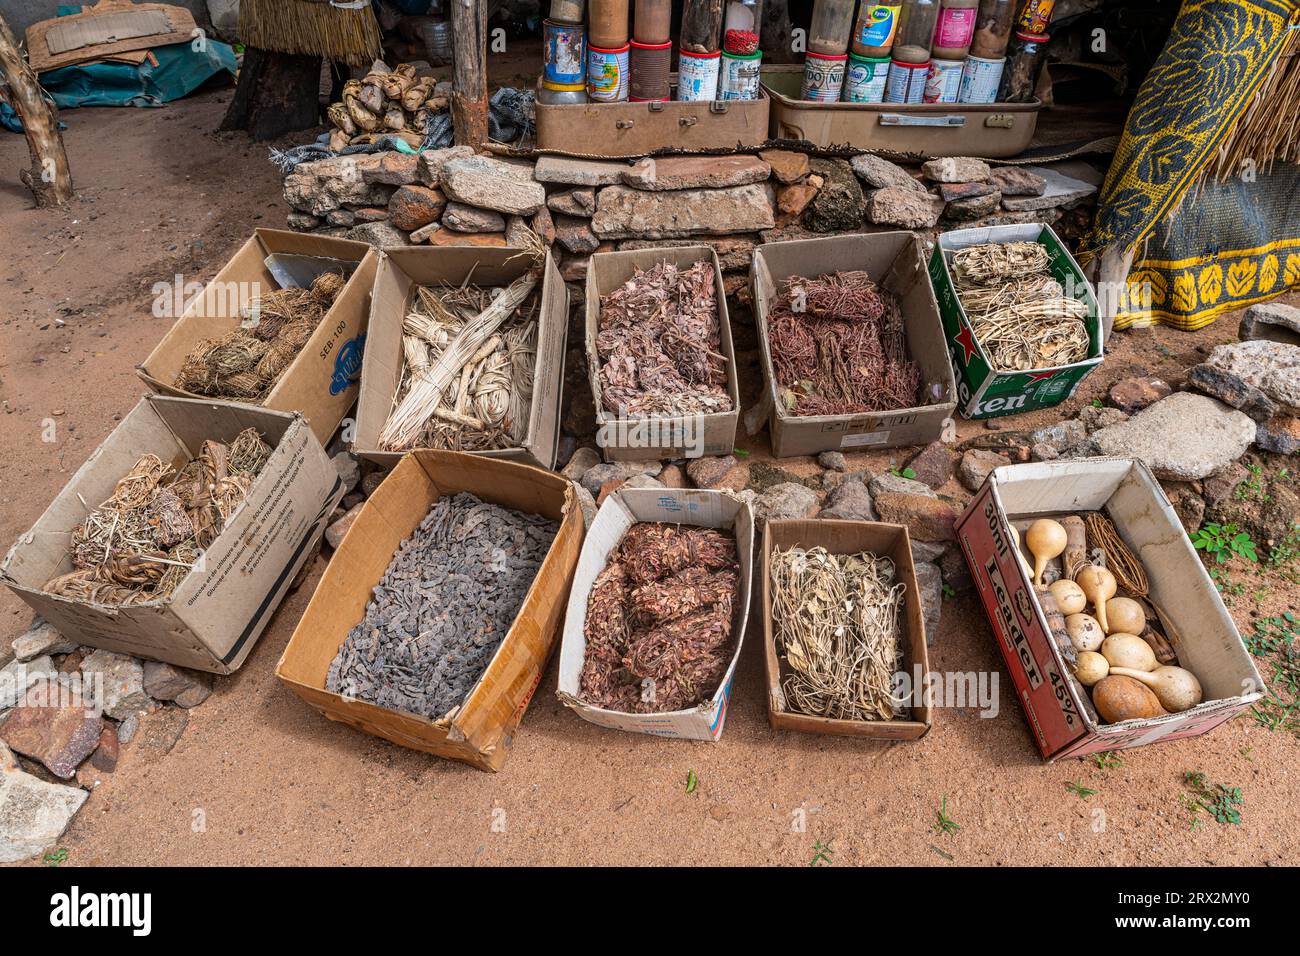 Radici e foglie locali, mercato della medicina tradizionale, Garoua, Camerun settentrionale, Africa Foto Stock